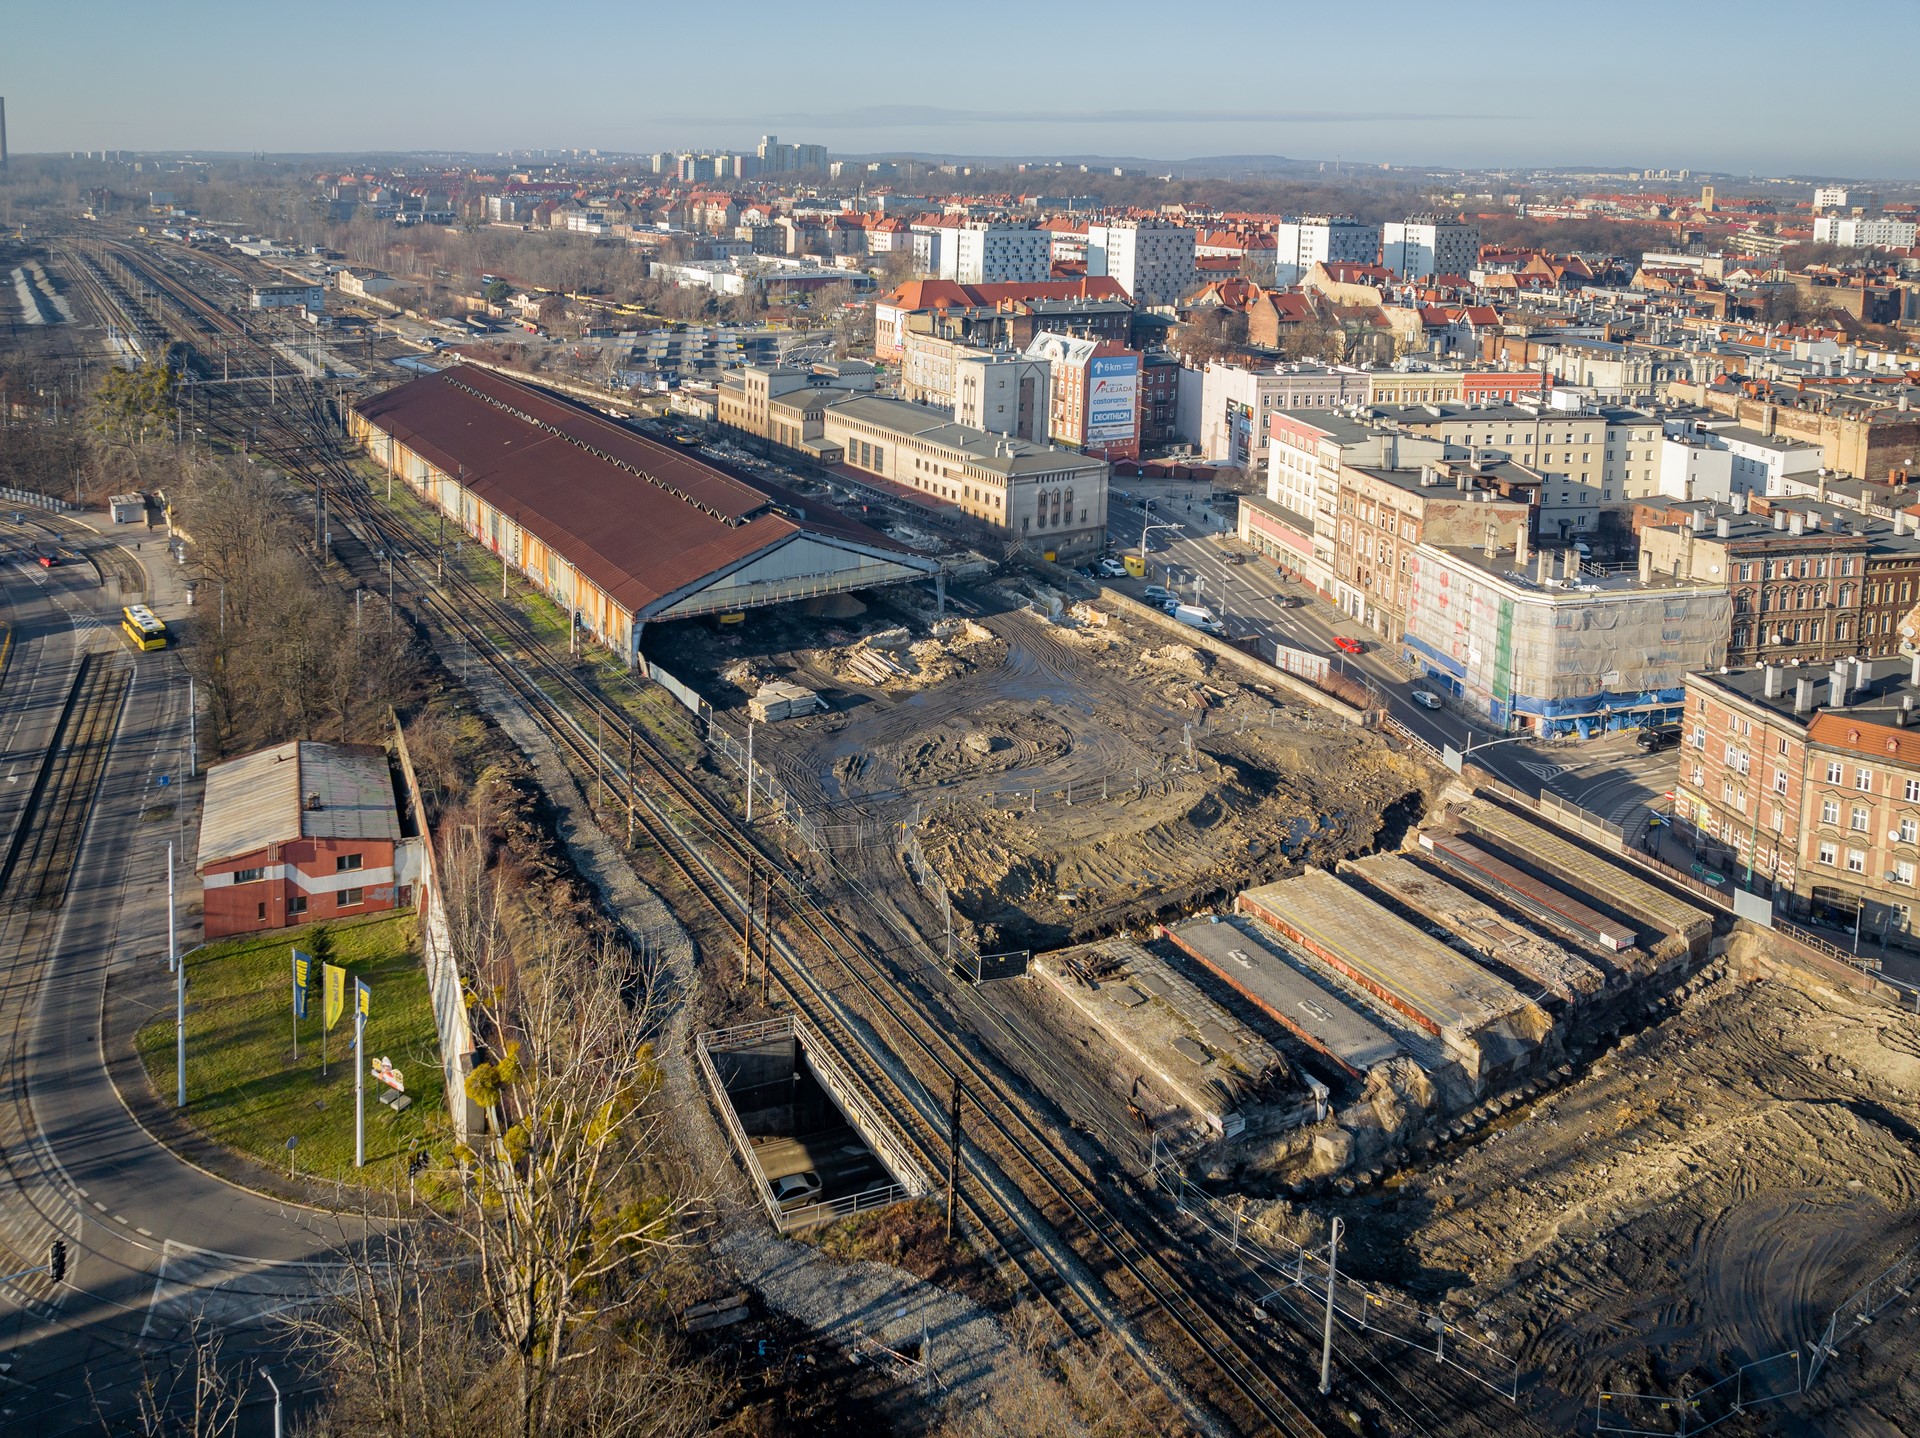 Zdjęcie: widok z góry na prace budowlane trwające na stacji Bytom.